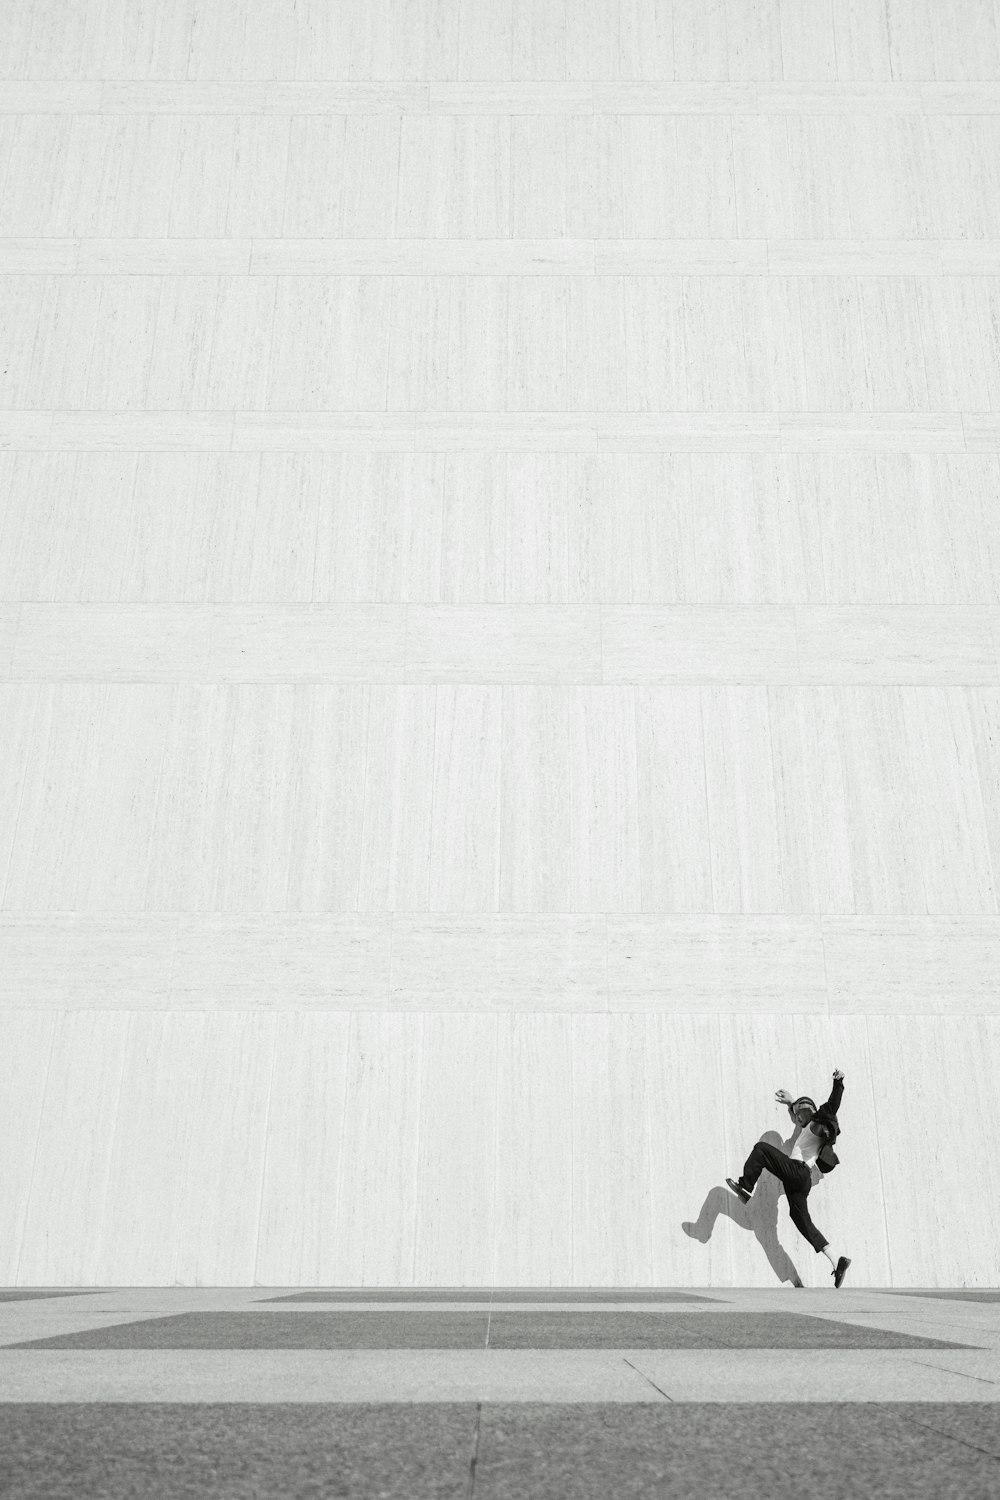 Una persona che salta in aria su uno skateboard